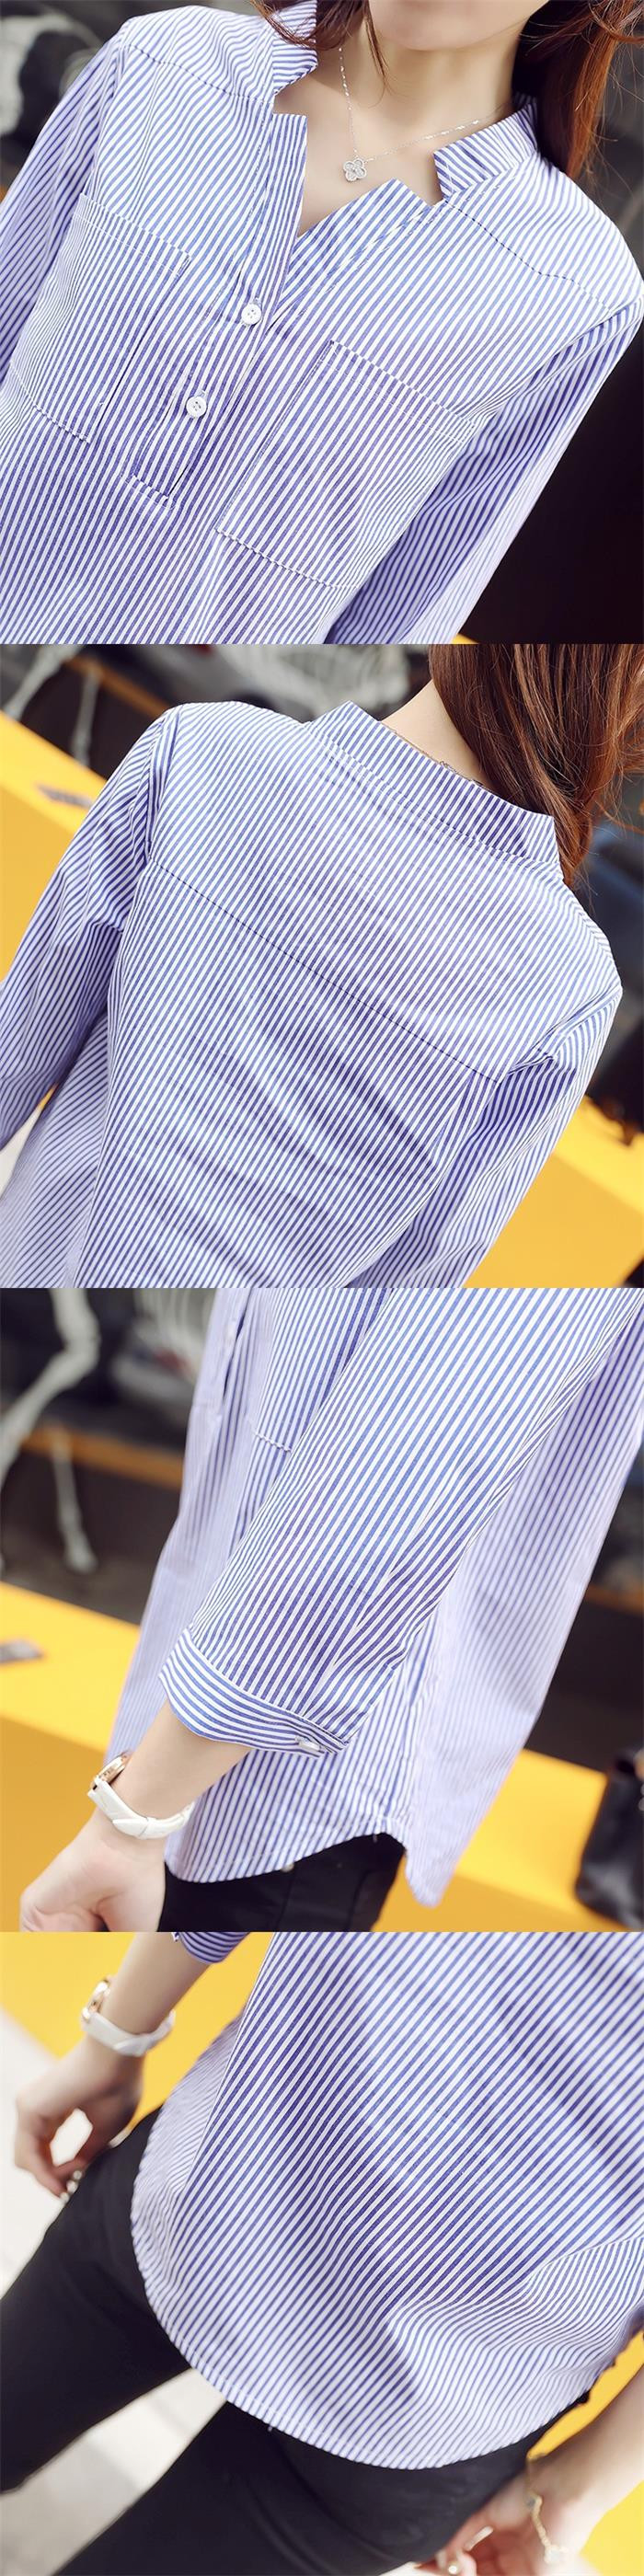 2017韩版秋季女装新款小v领宽松上衣t恤衫经典竖条纹立领套头衬衫